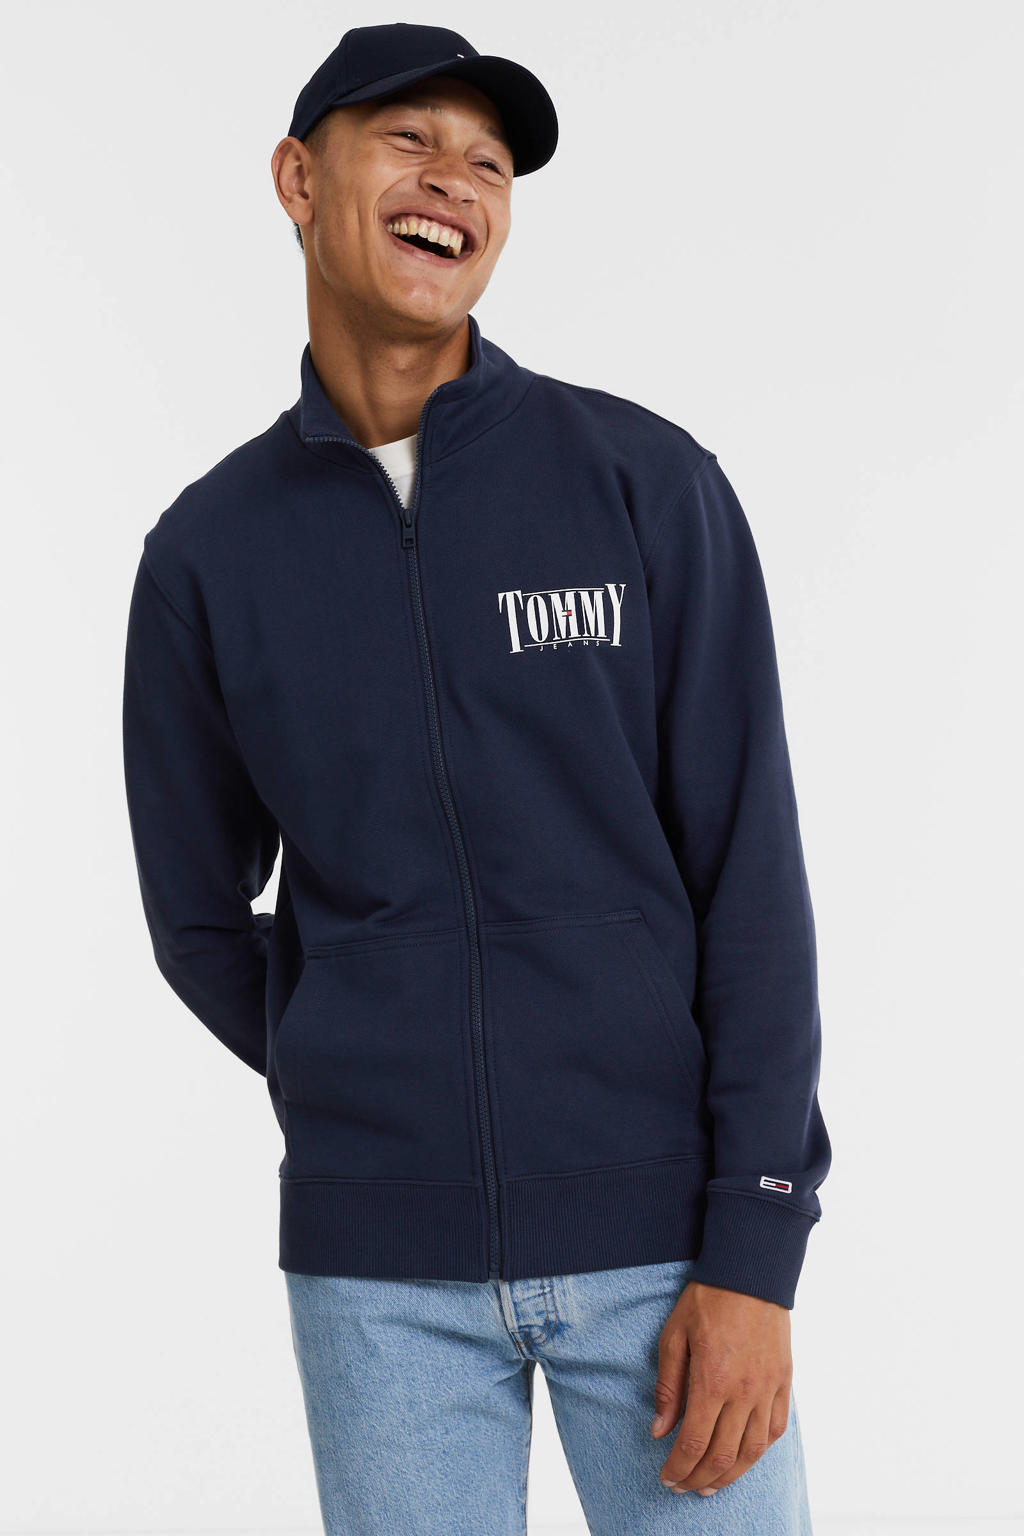 Tommy Jeans sweatvest van biologisch katoen twilight navy